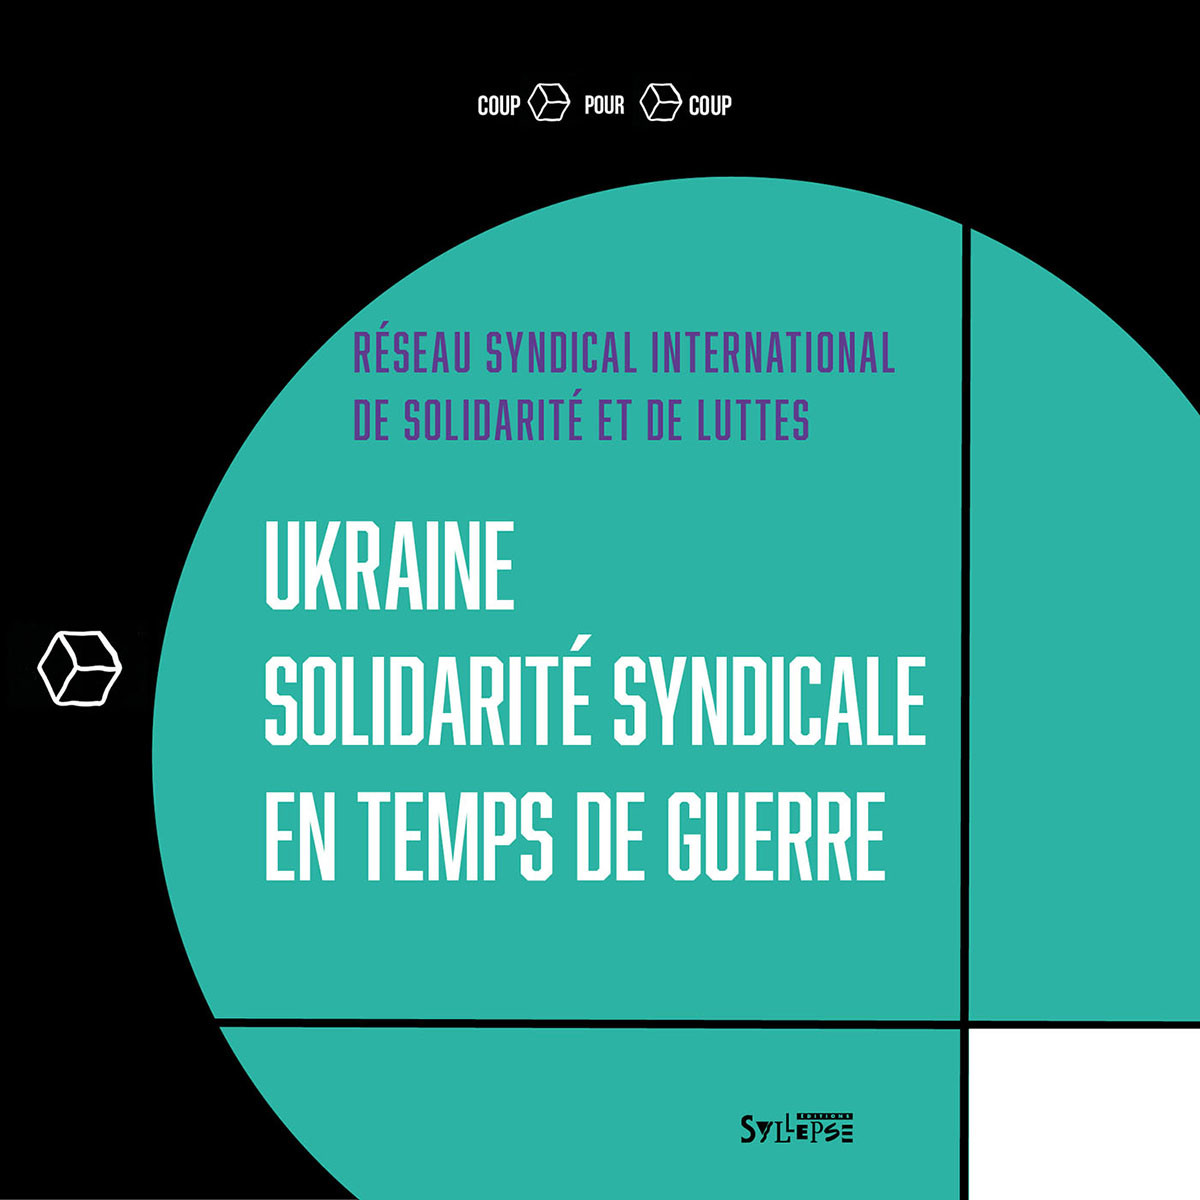 Ukraine, solidarité syndicale en temps de guerre Coup pour coup